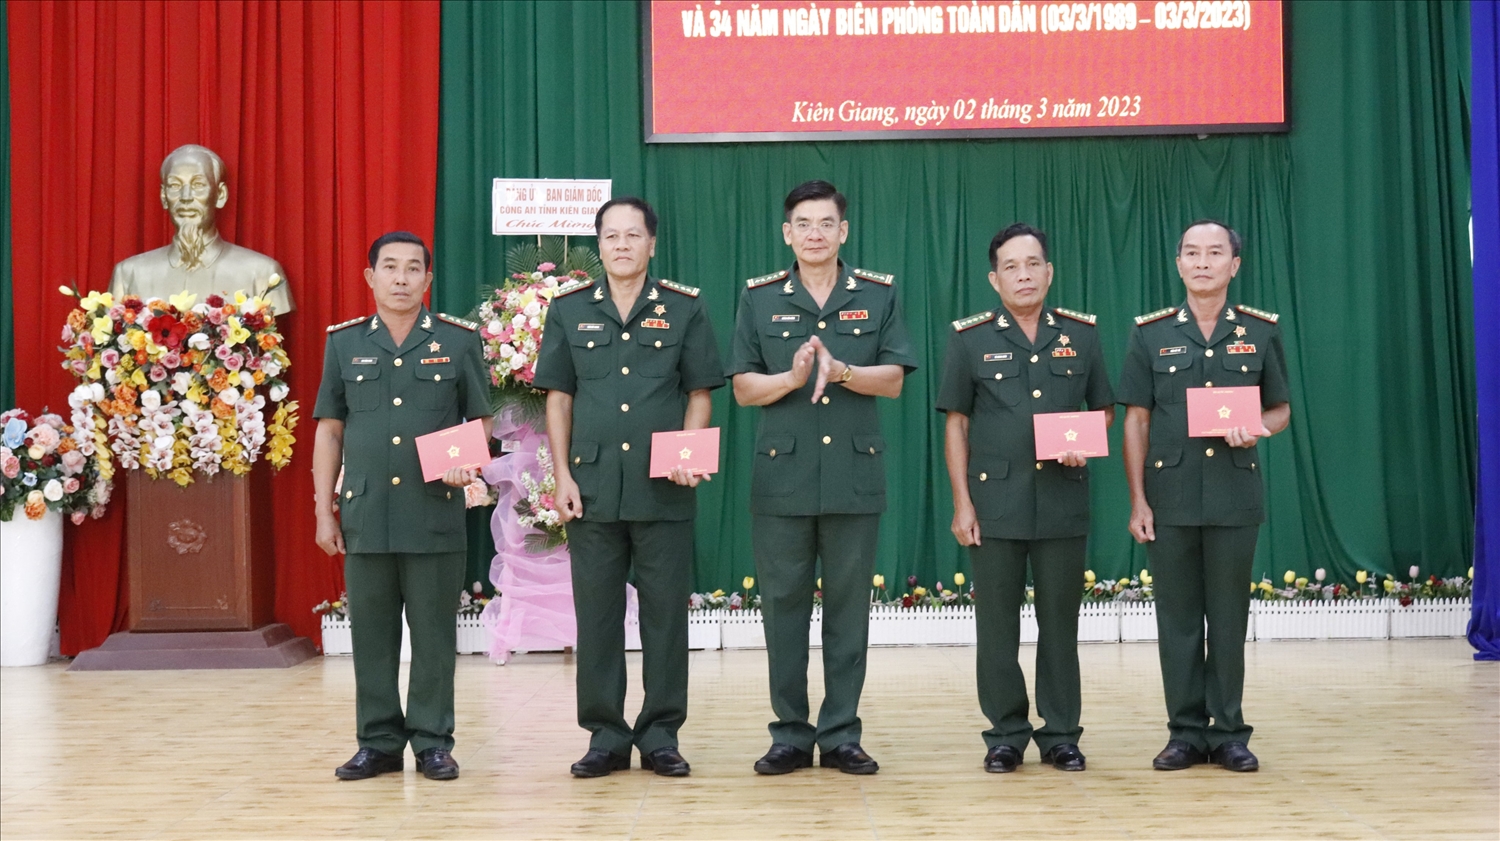 Đại tá Huỳnh Văn Đông, trao Kỷ niệm chương đến các cá nhân trong lực lượng BĐBP tỉnh